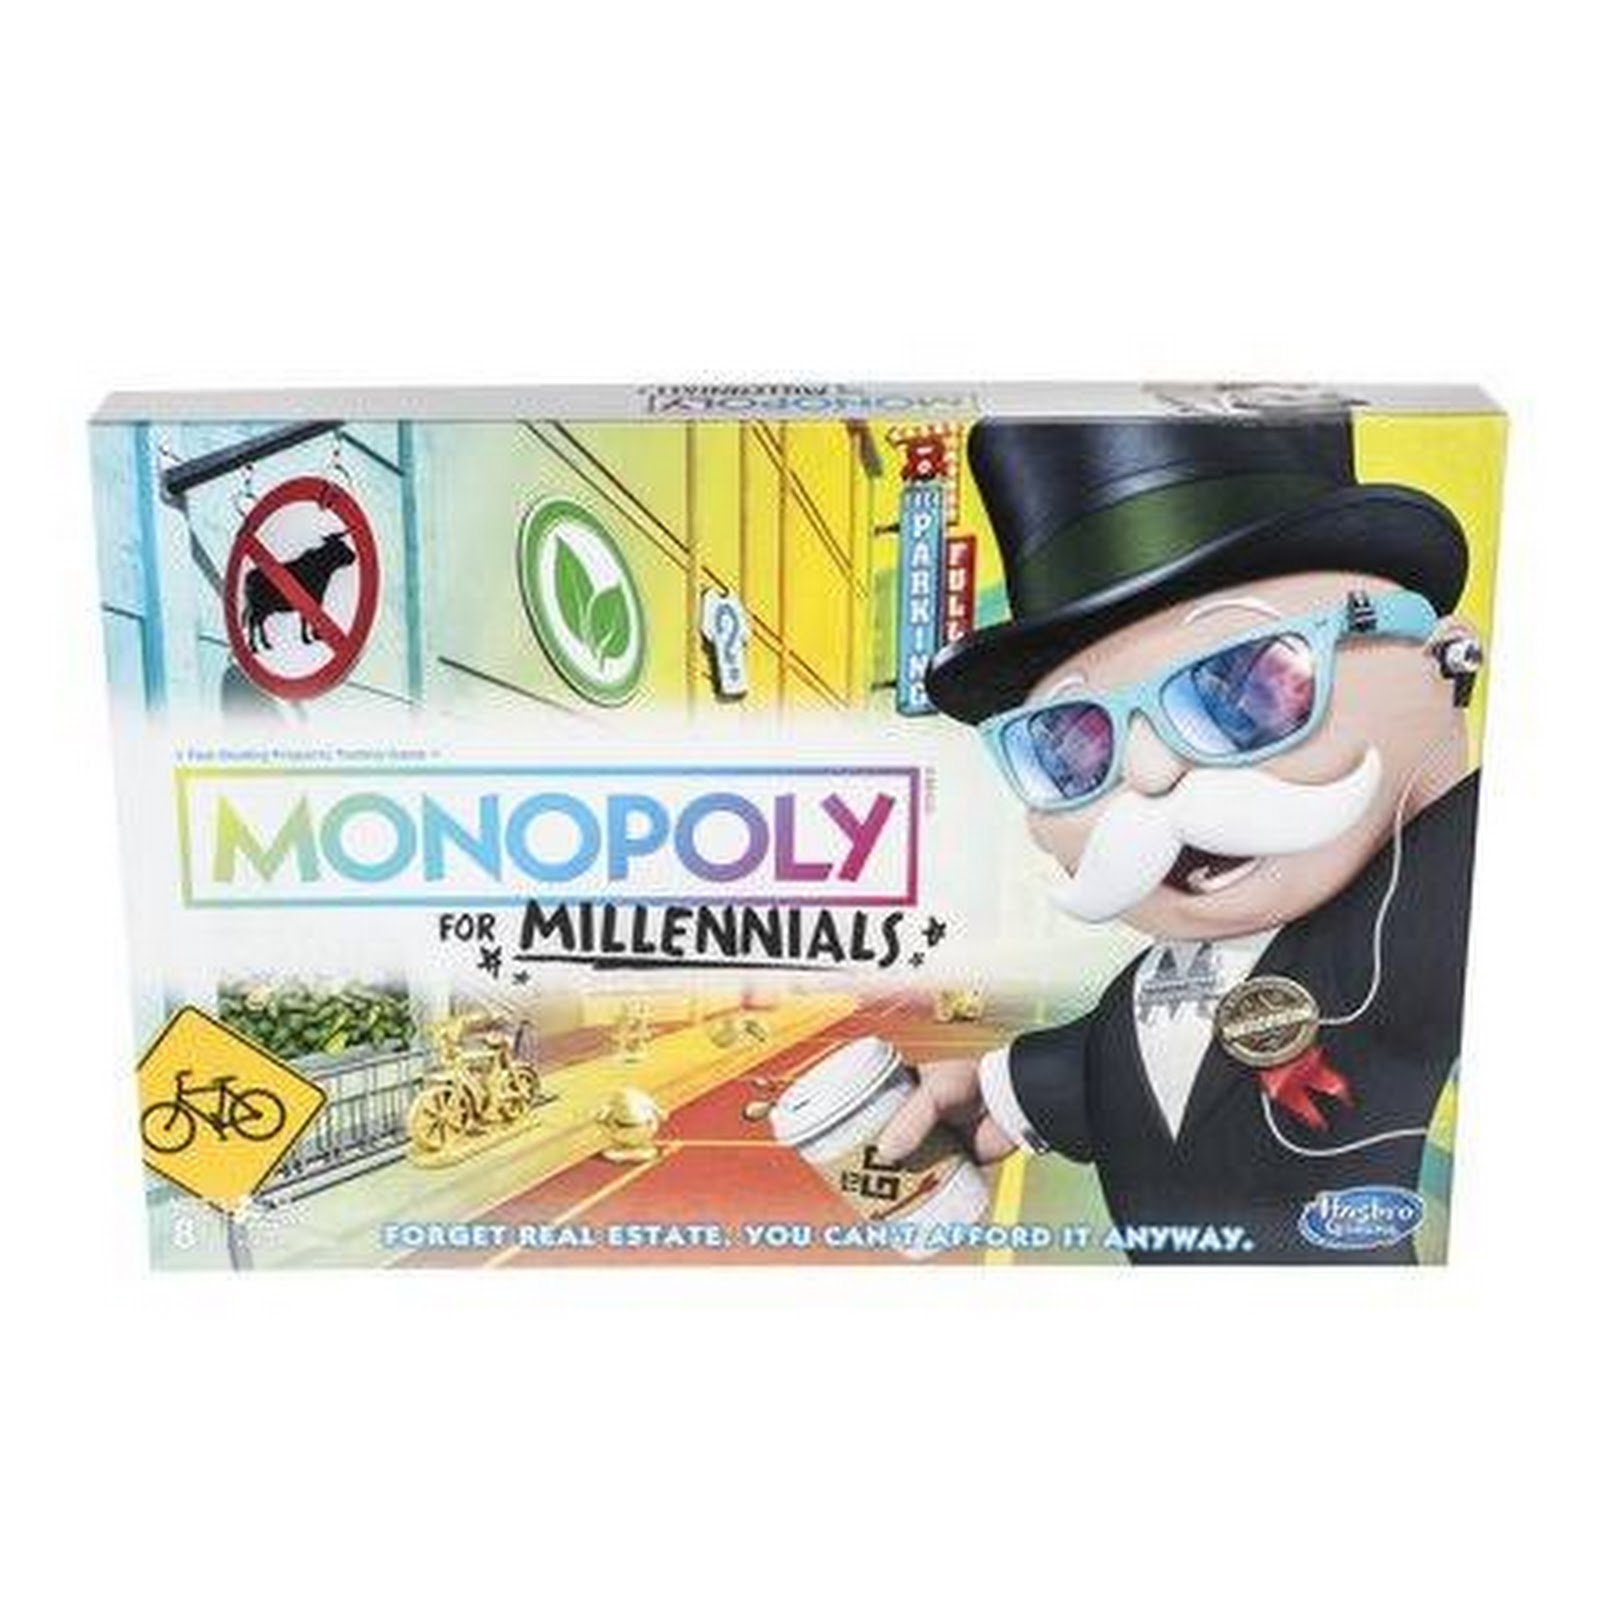 Monopoly Millennials Pkg shot front.jpg